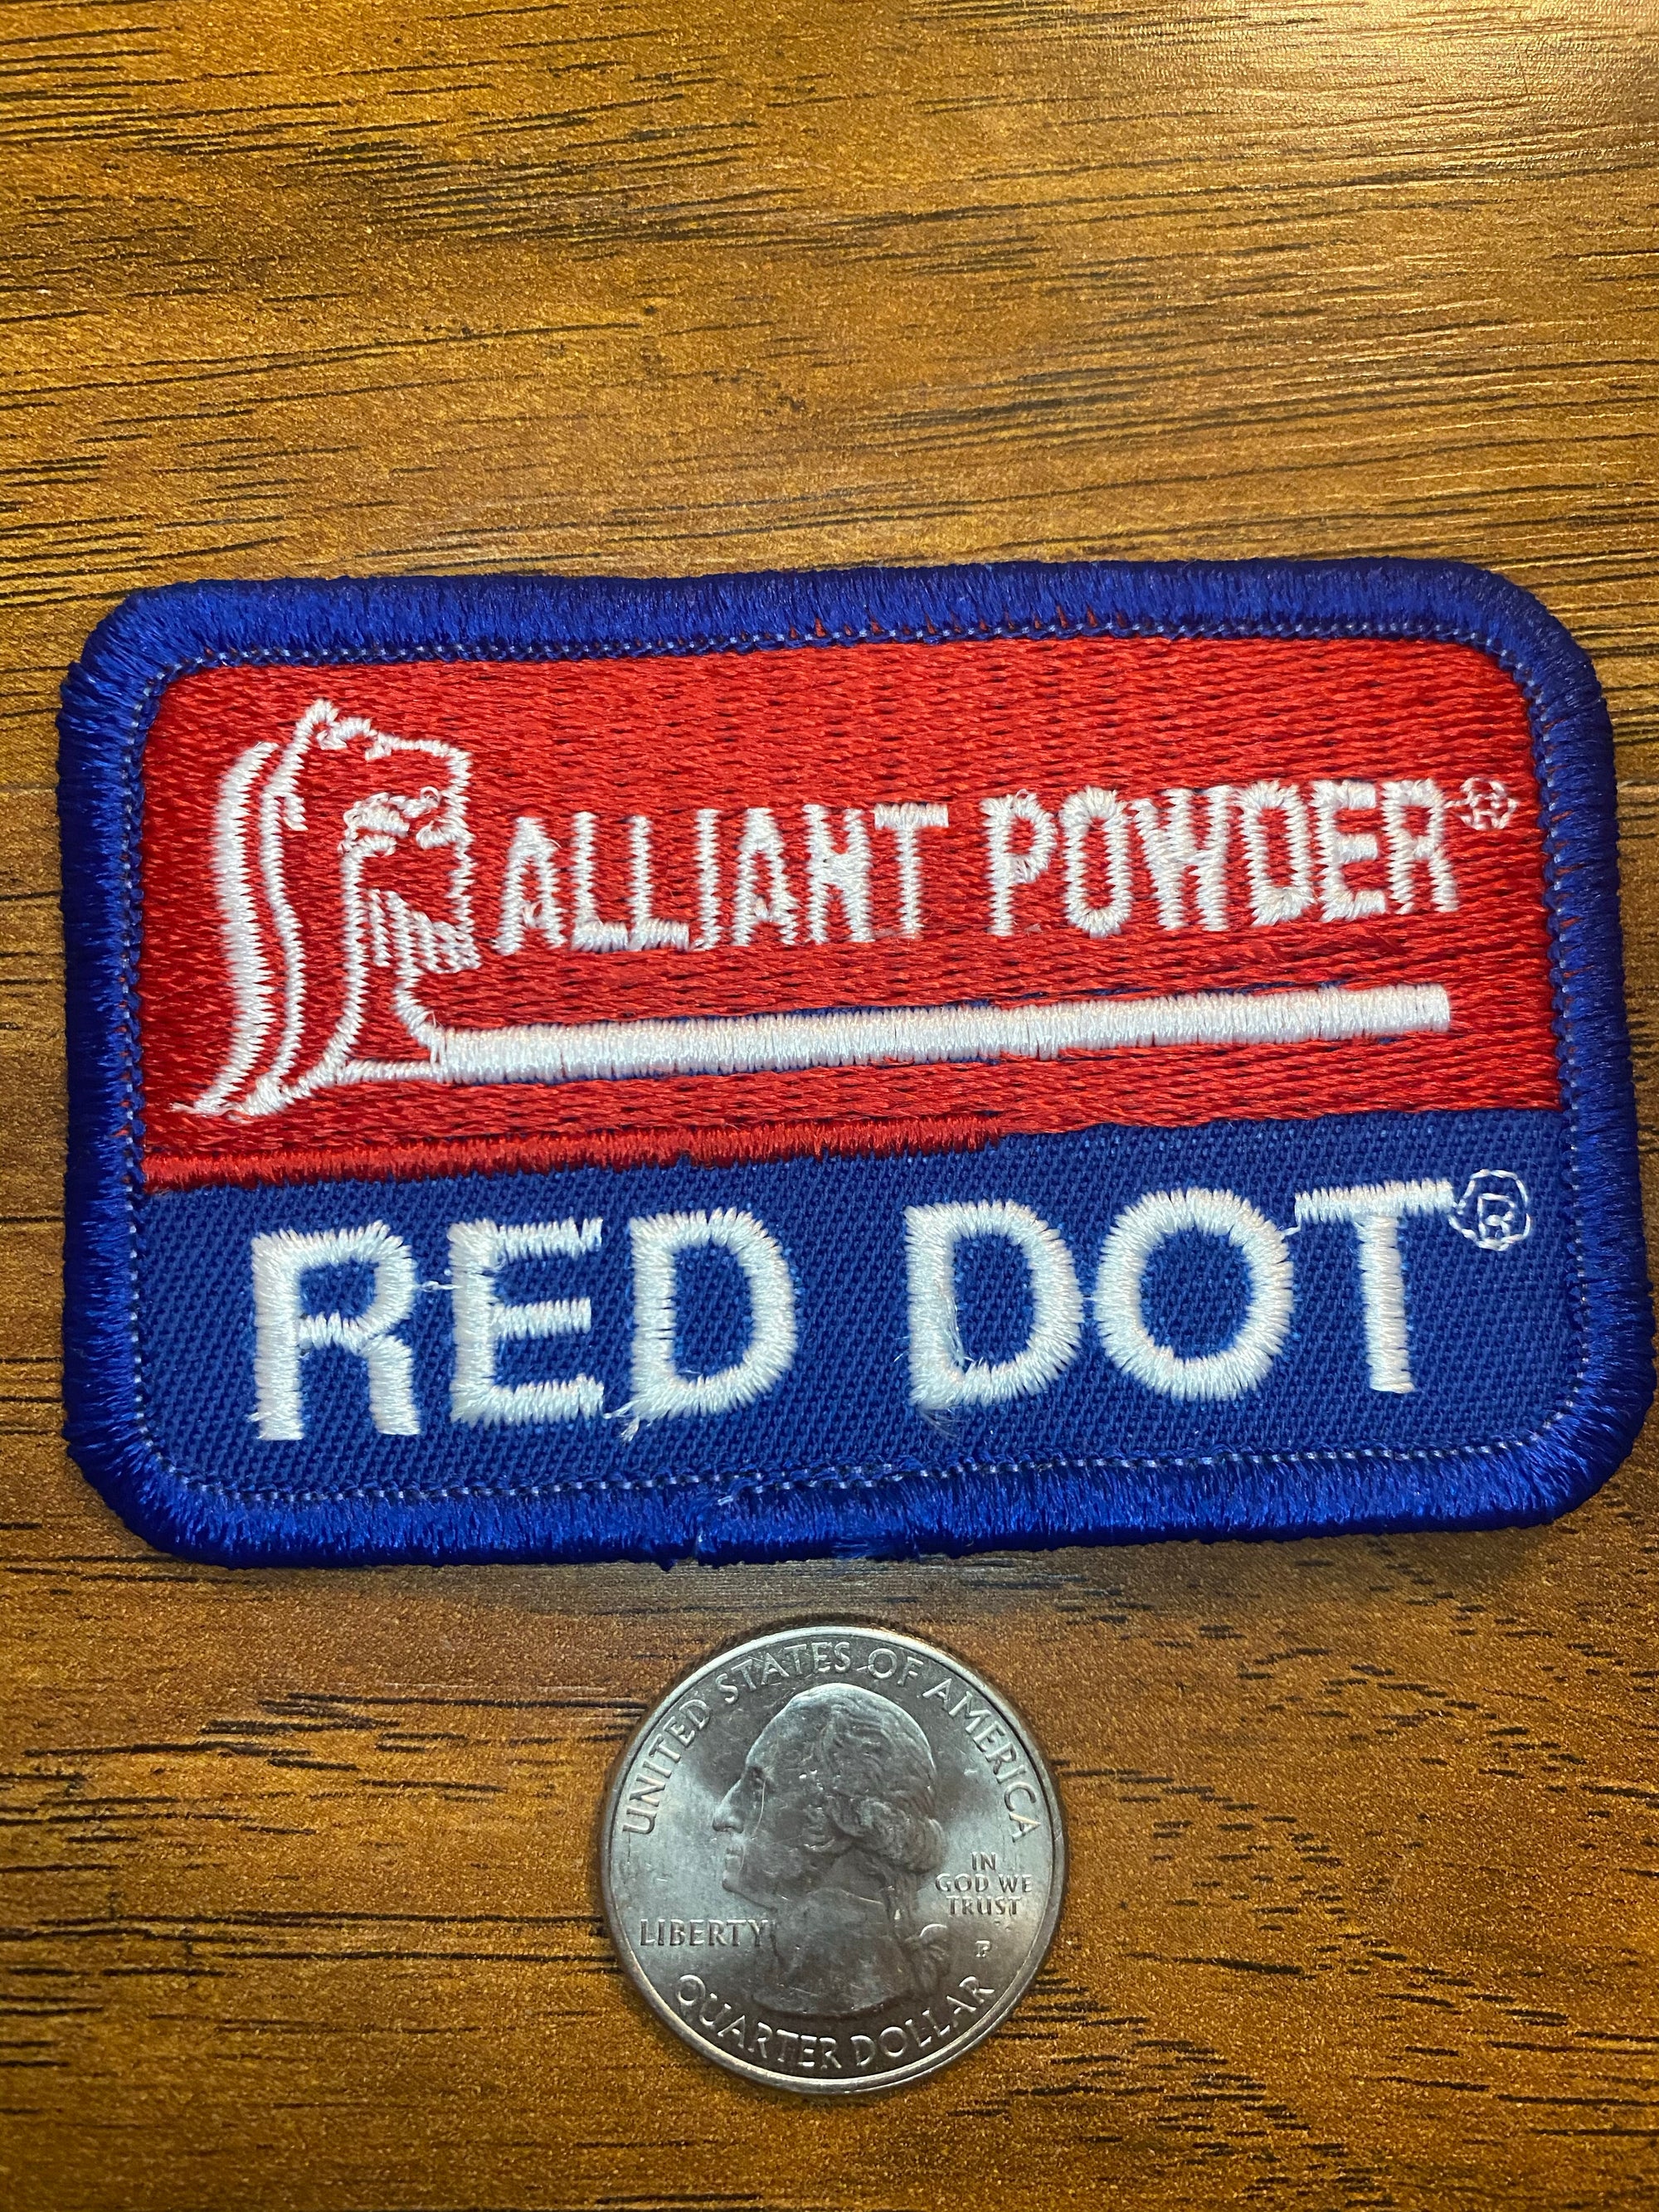 Vintage Allianz Powder Red Dot